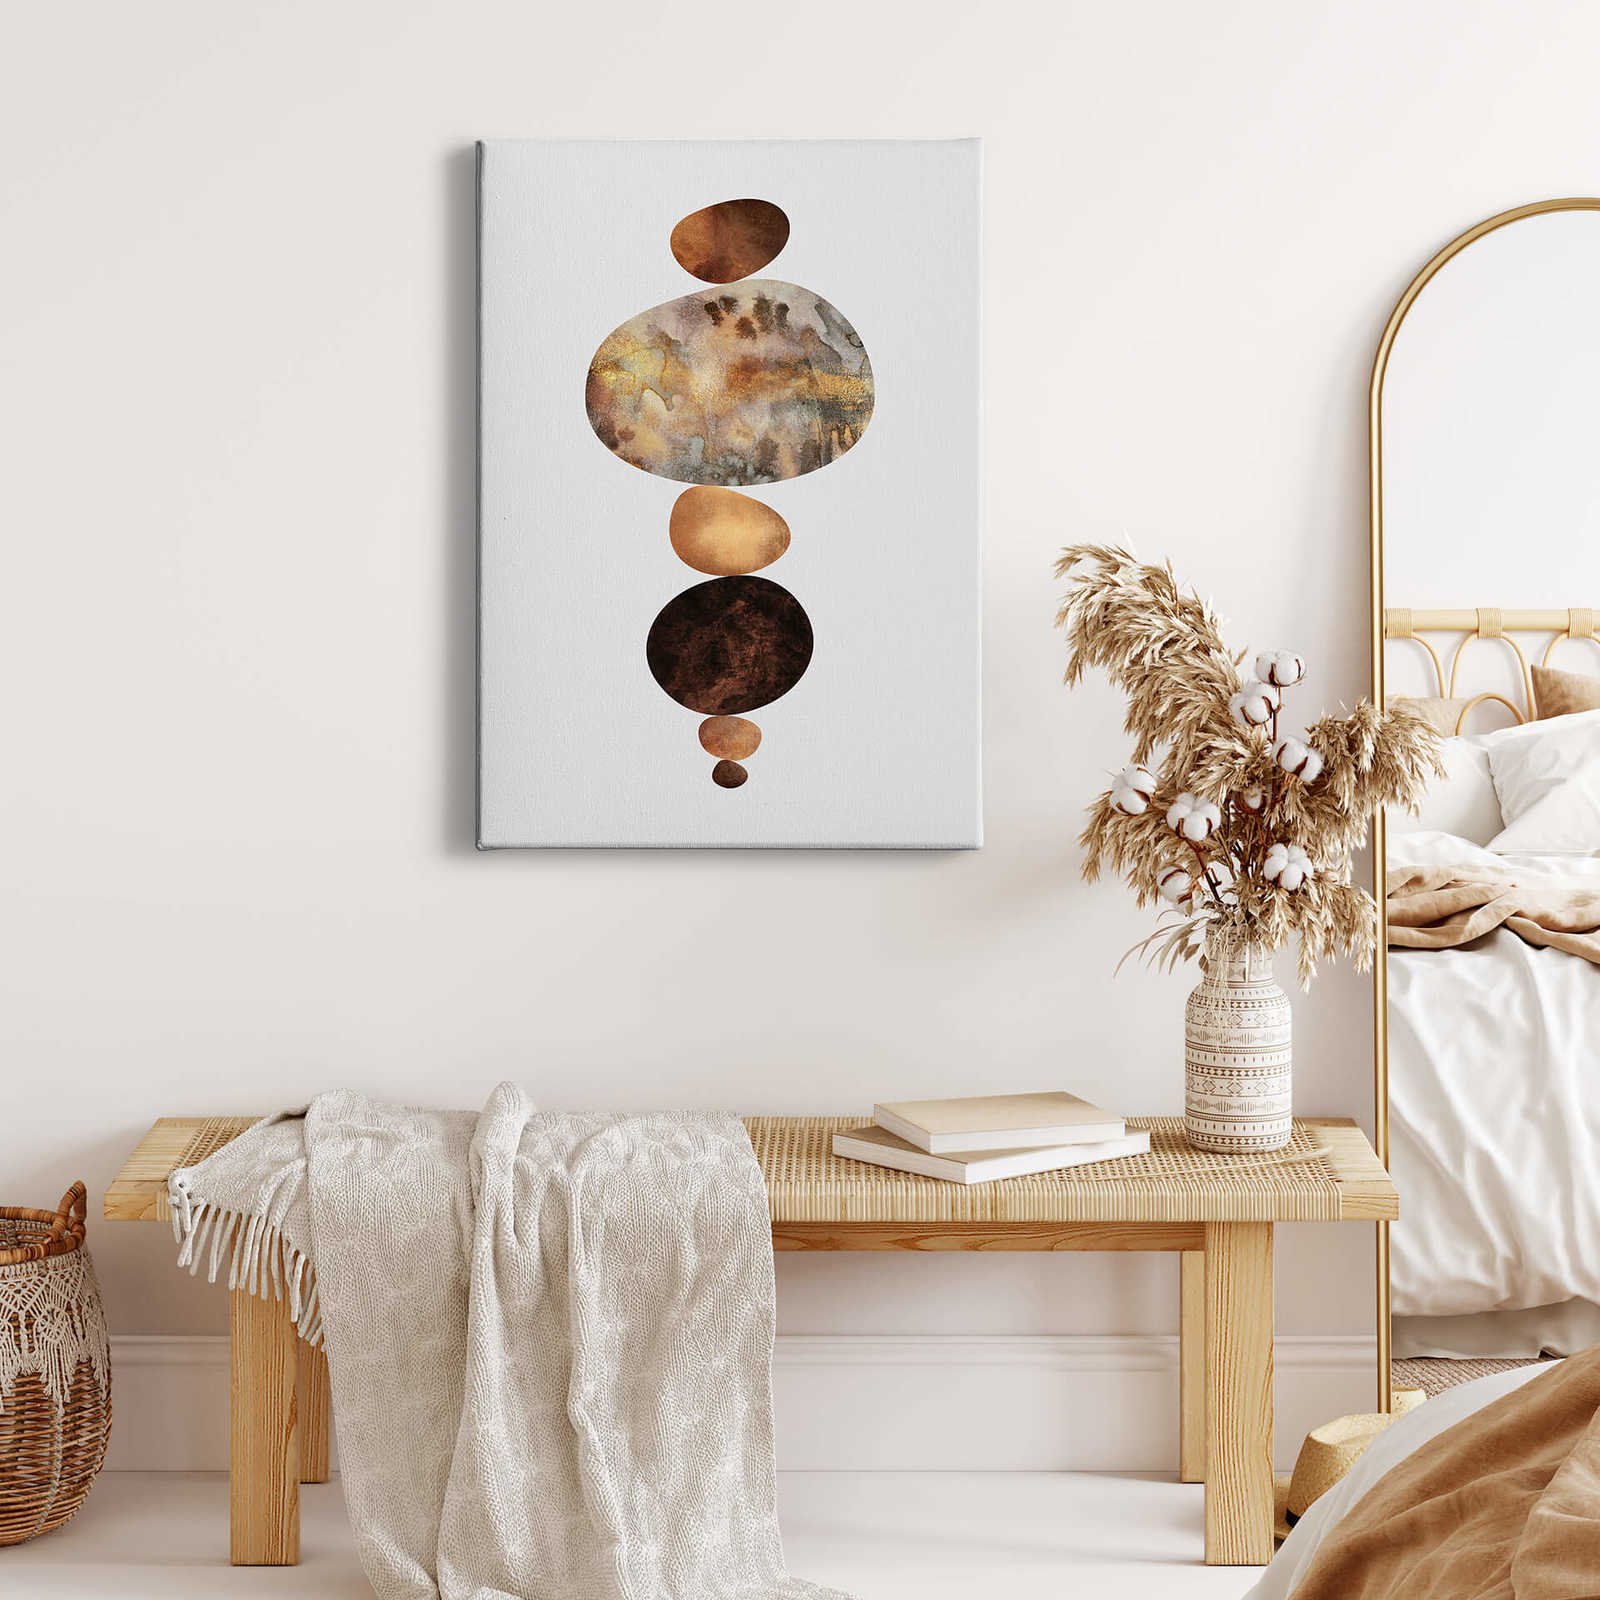             Canvas print "Balance" by Fredriksson – brown
        